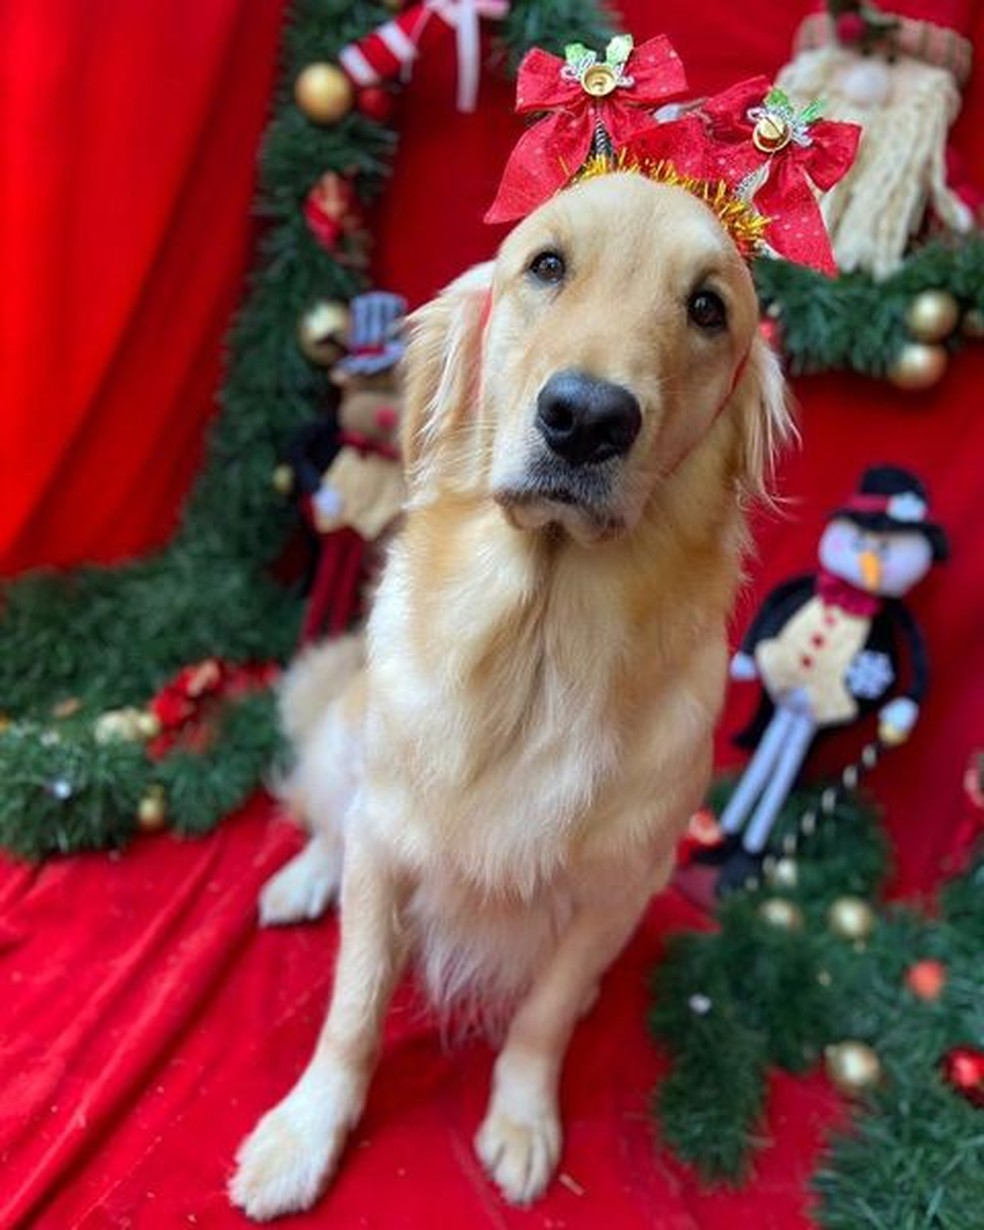 A cadela dos jornalistas Mari Palma e Phelipe Siani desejou um feliz Natal via Instagram de seus tutores — Foto: Instagram/ @maripalma e @phelipe.siani/ Reprodução